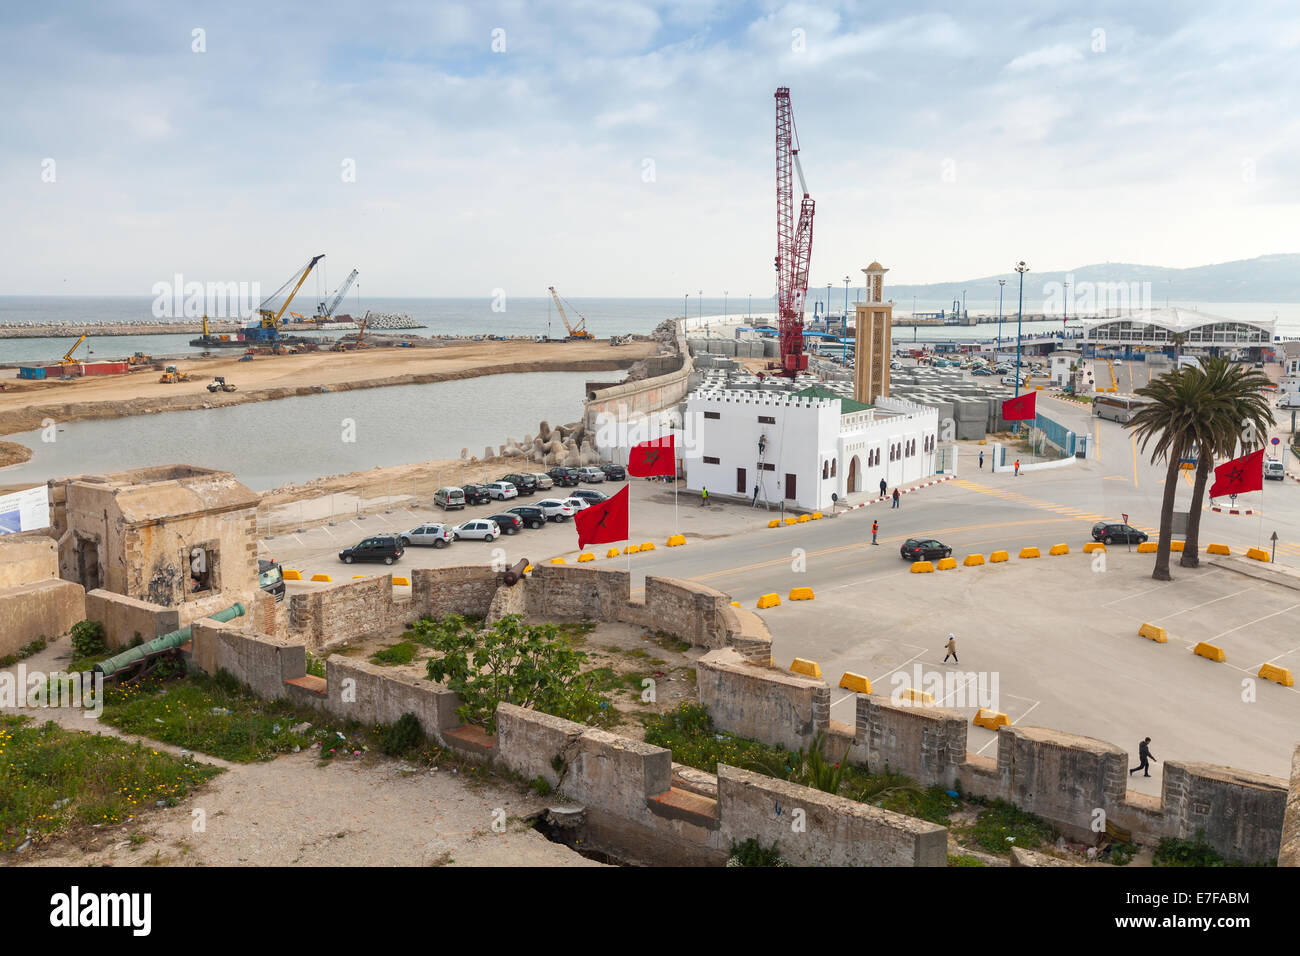 Tangeri, Marocco - MARZO 22, 2014: nuovo terminal per passeggeri in costruzione nel porto di Tangeri, Africa Foto Stock